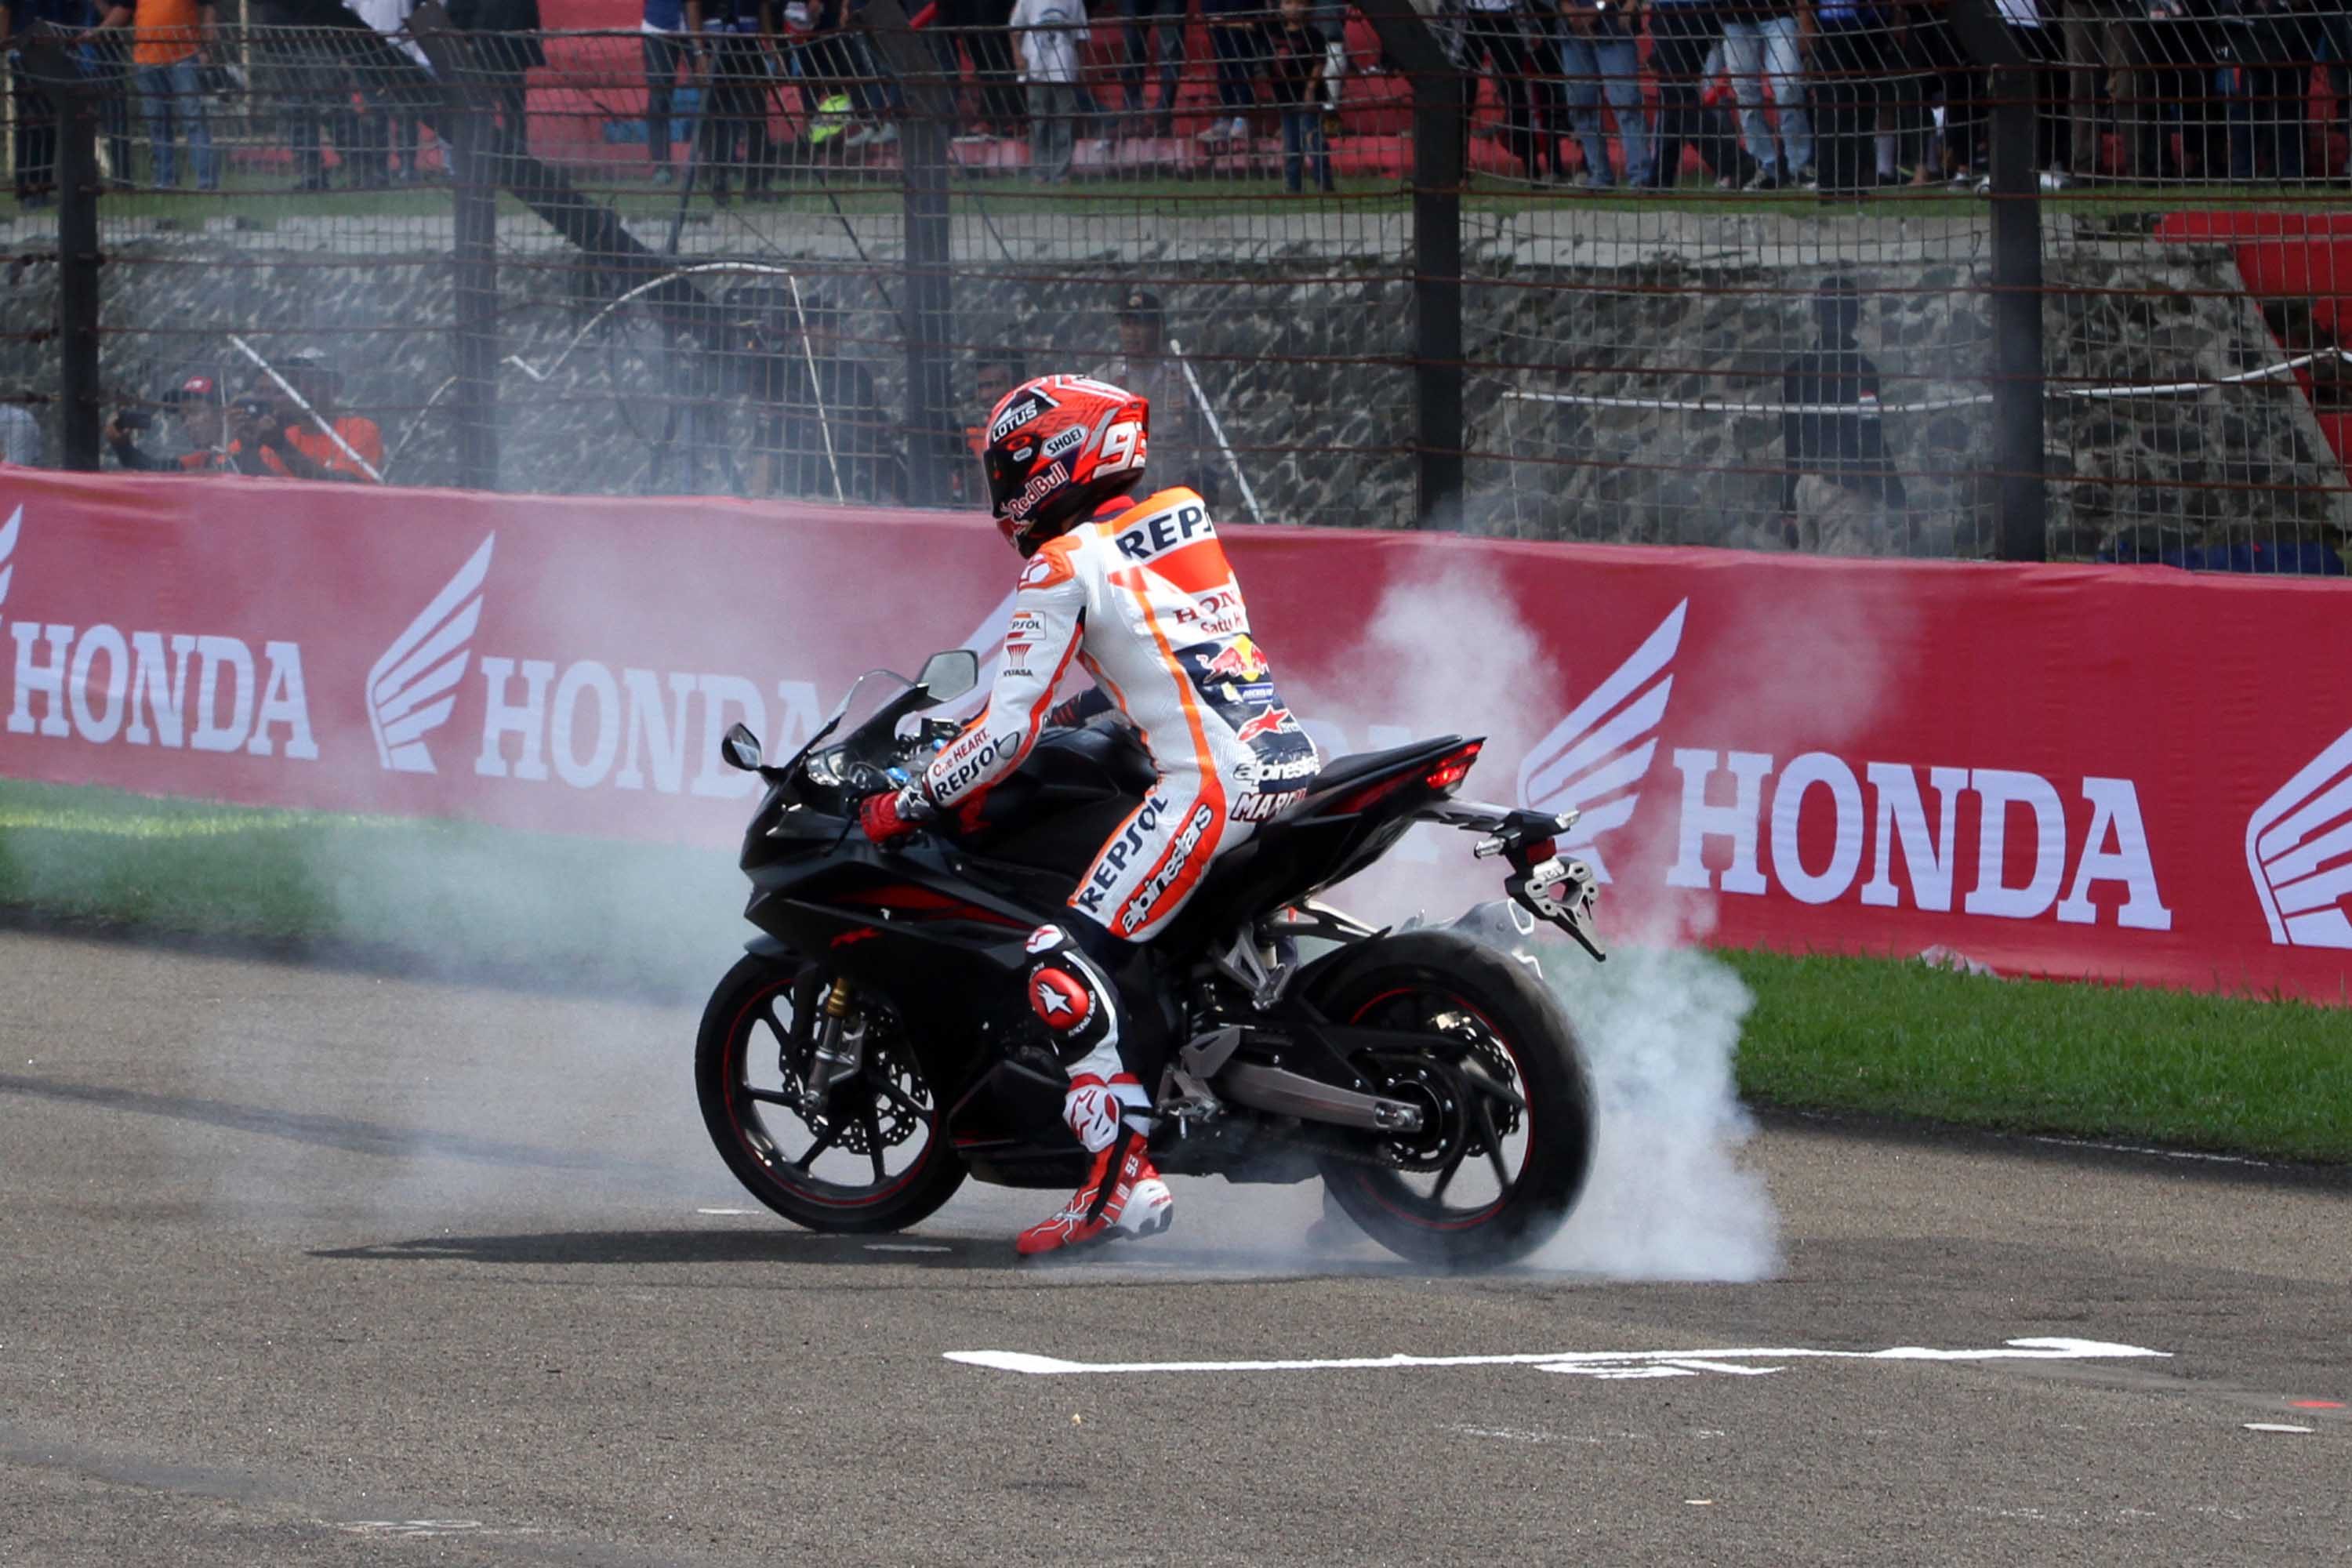 Kedatangan Marquez ke Indonesia juga untuk merayakan kemenangan MotoGP 2016 bersama fansnya di Indonesia. Foto oleh Rappler 